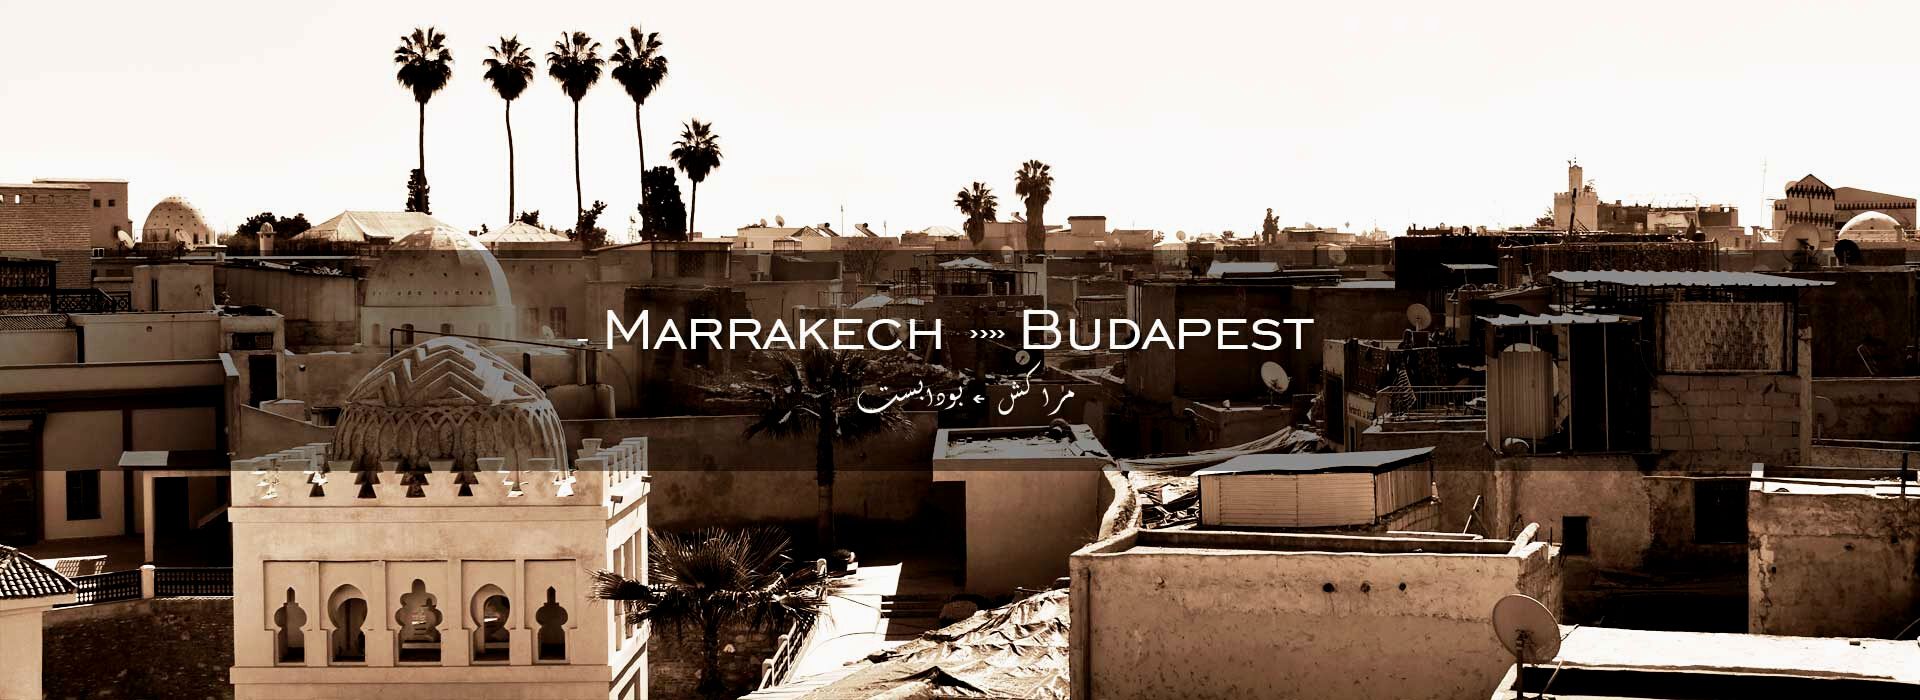 Marrakech - Budapest